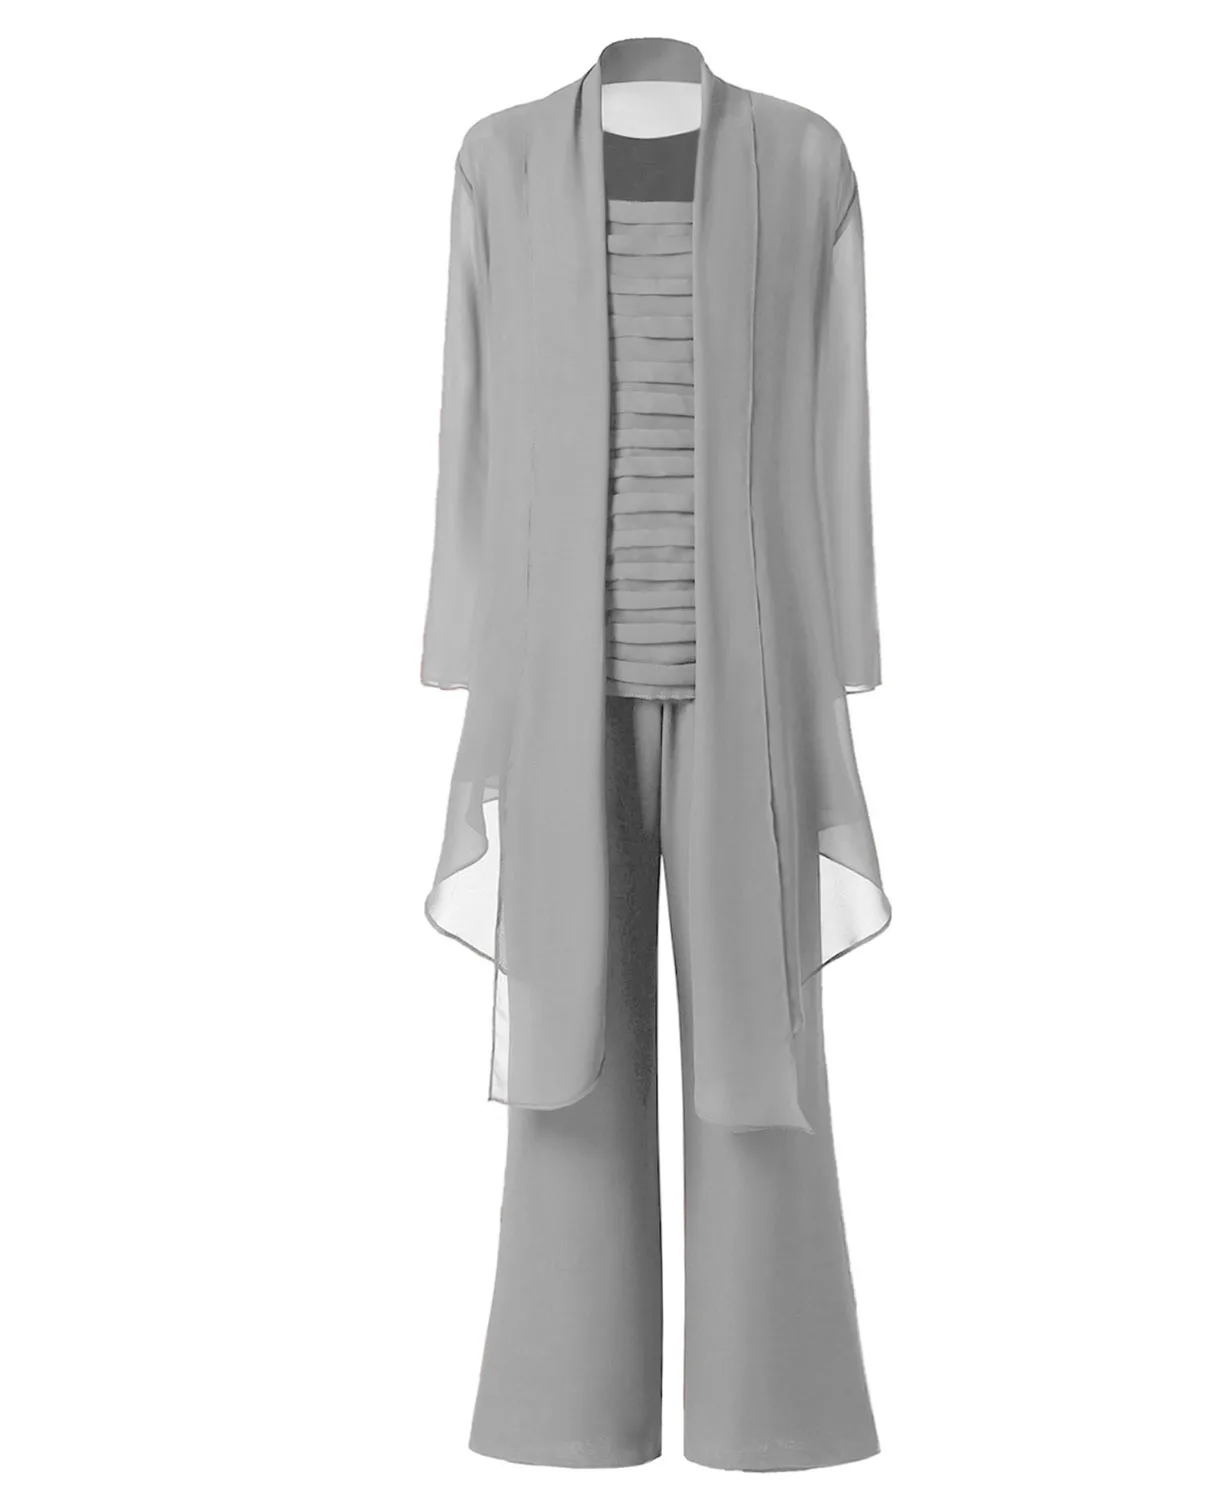 SOLOVEDRESS женский костюм из 3 предметов, шифоновое платье для матери невесты, брючный костюм с рукавами, куртка, широкий брючный костюм, SL-M13 - Цвет: Silver Grey